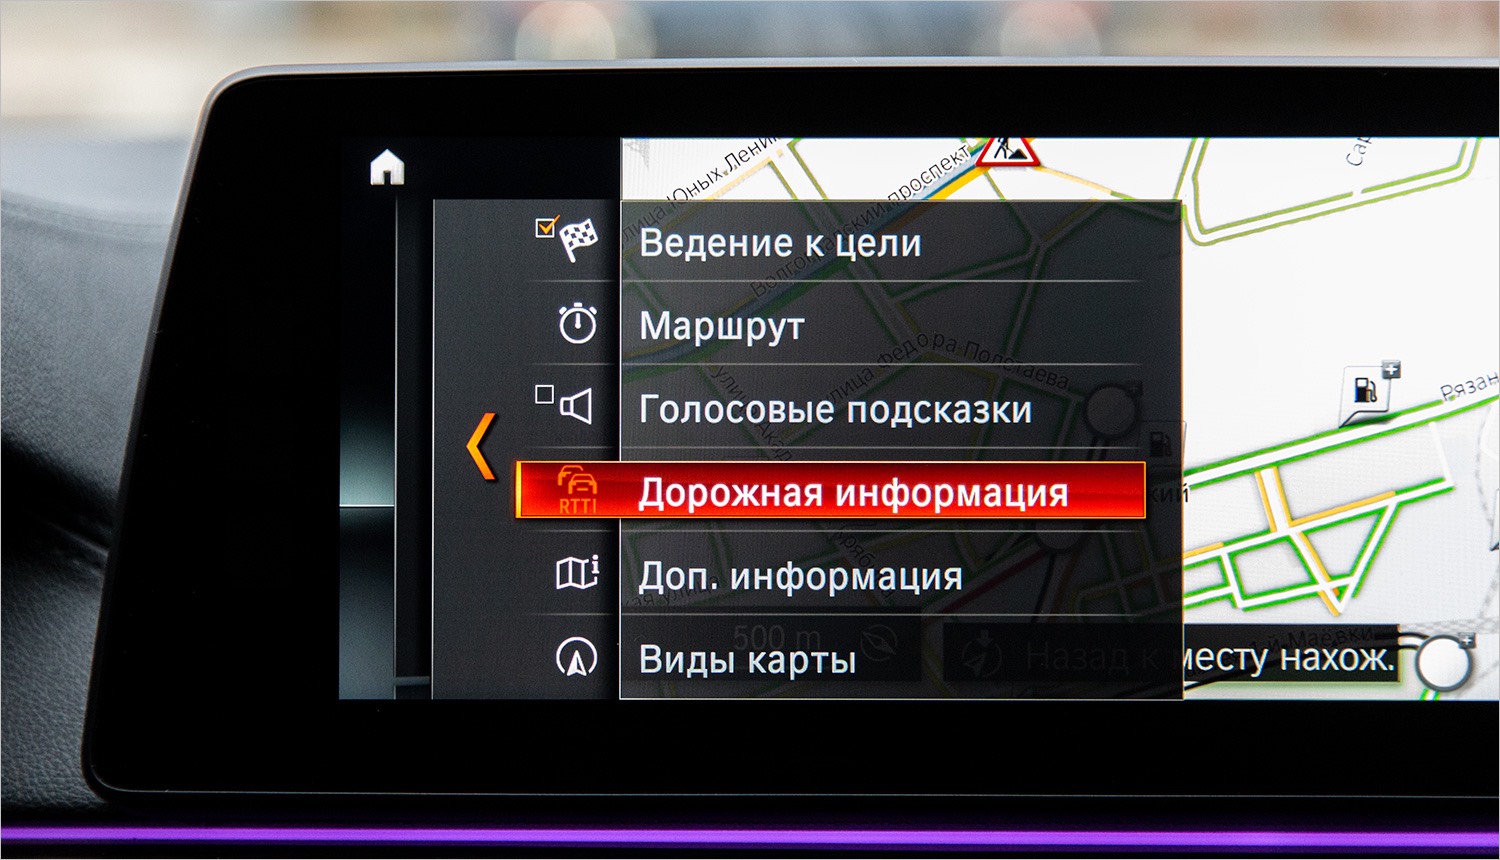 Компания BMW ввела плату за использование опций - читайте в разделе Новости в Журнале Авто.ру